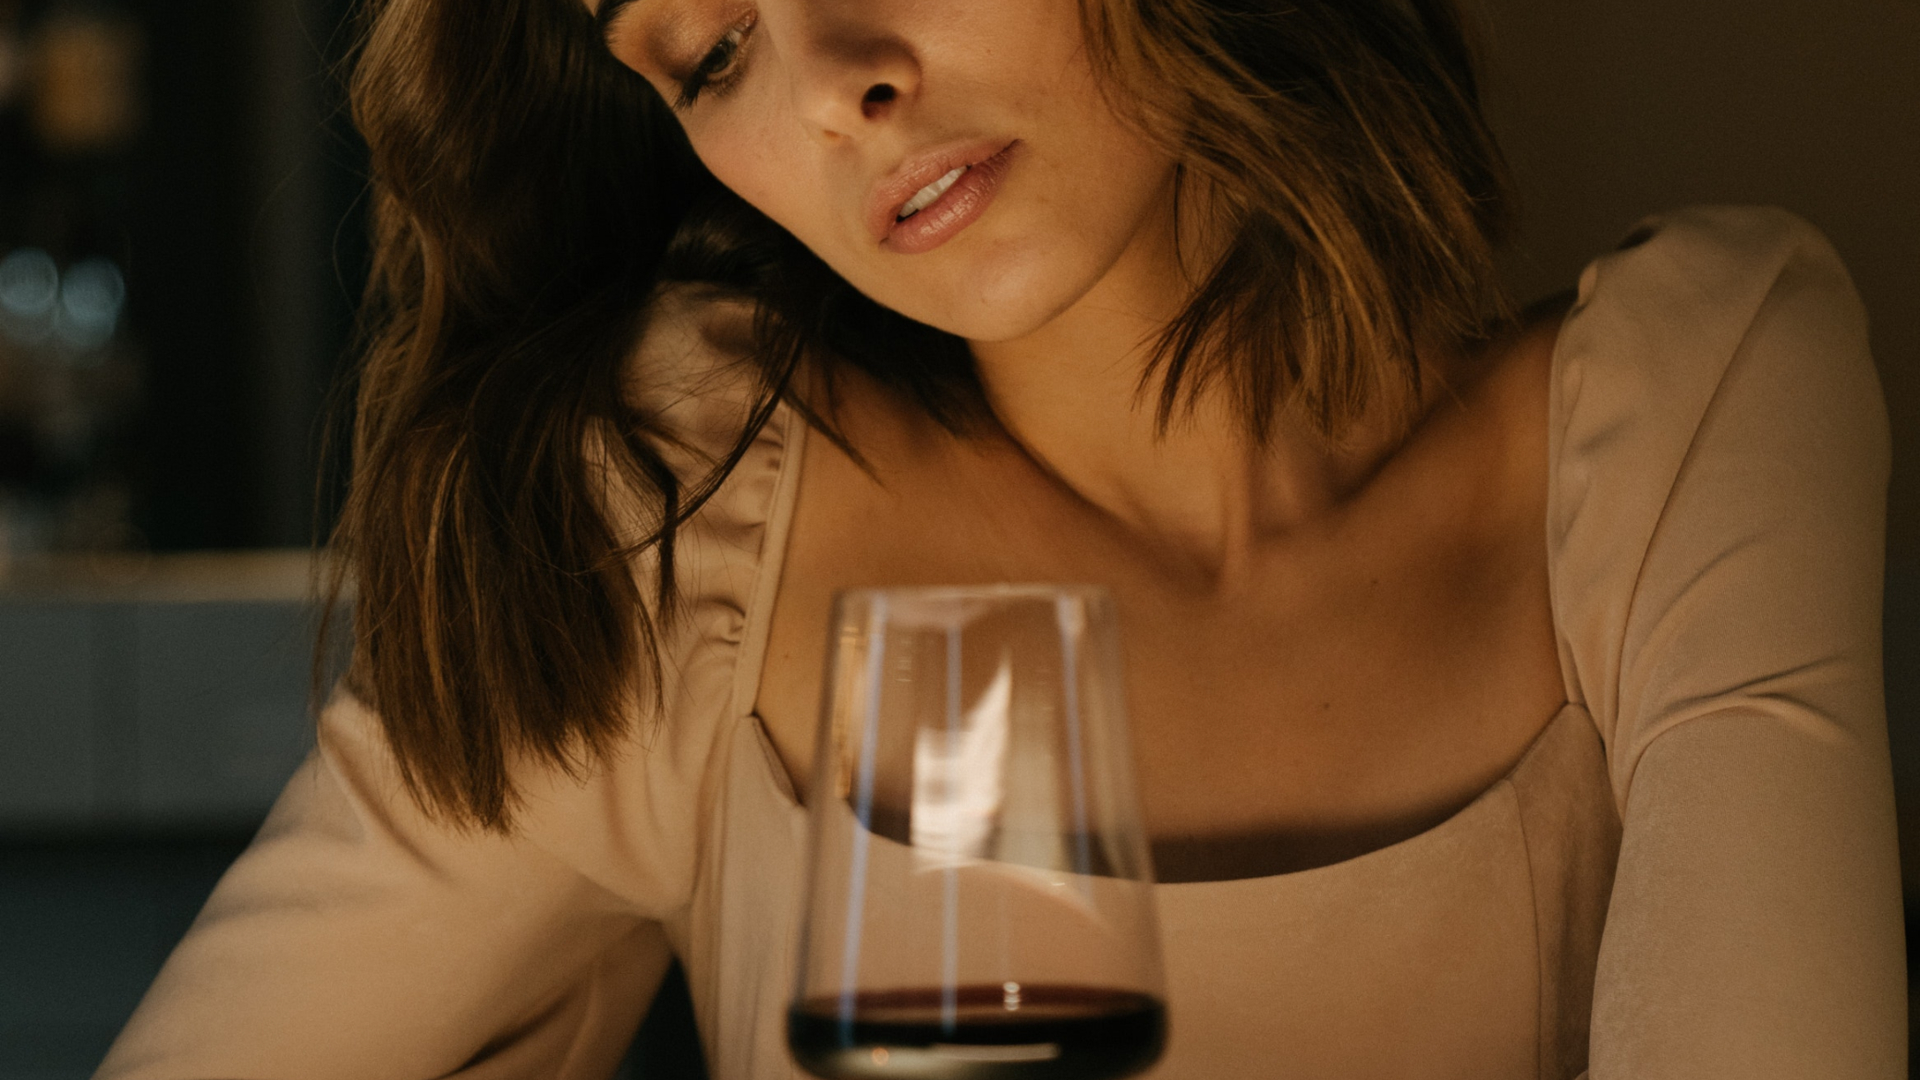 žena a víno